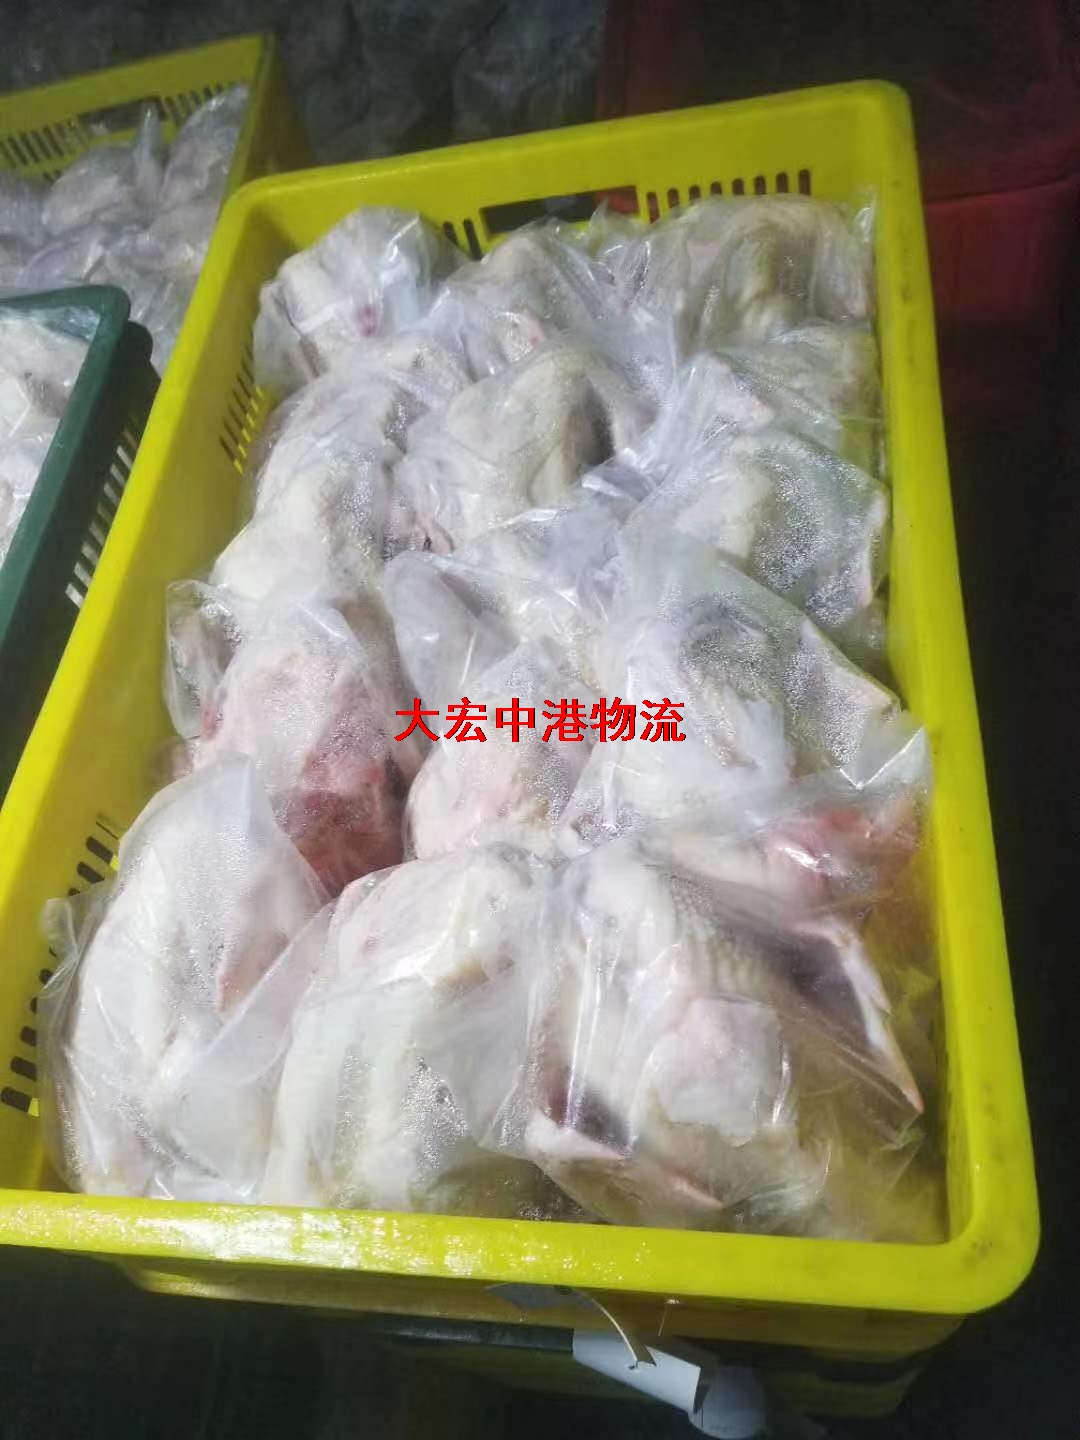 鸡鸭肉香港物流-冷藏保鲜活禽中港进出口-冷藏禽类运输到香港